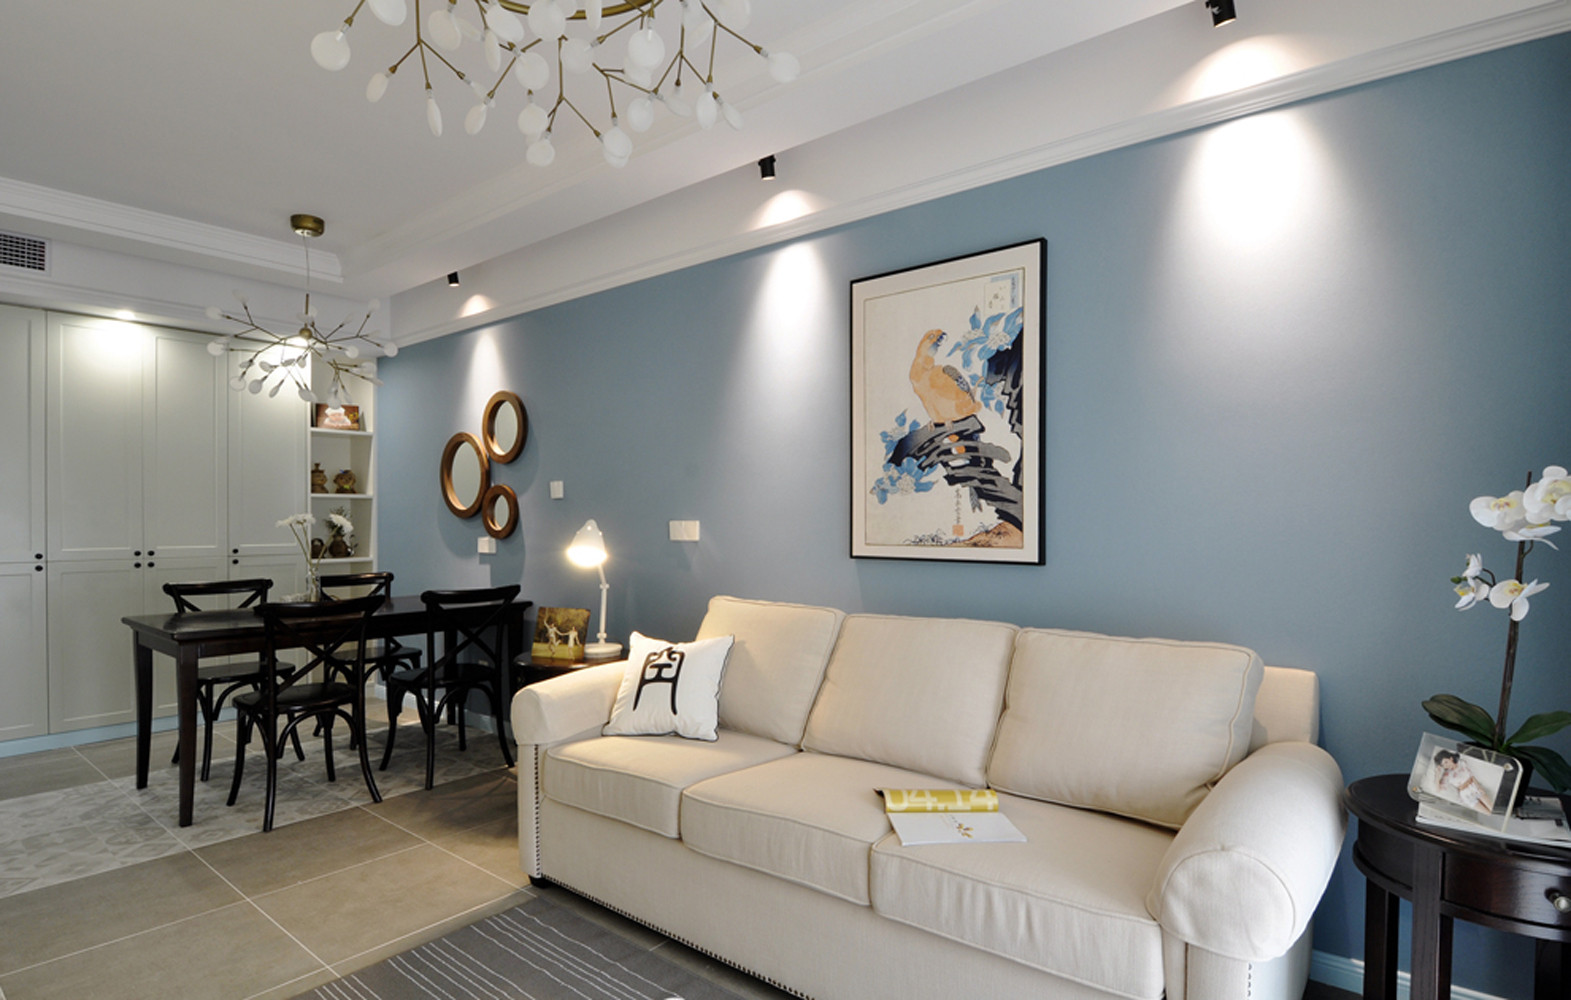 二居室美式风格家沙发背景墙图片